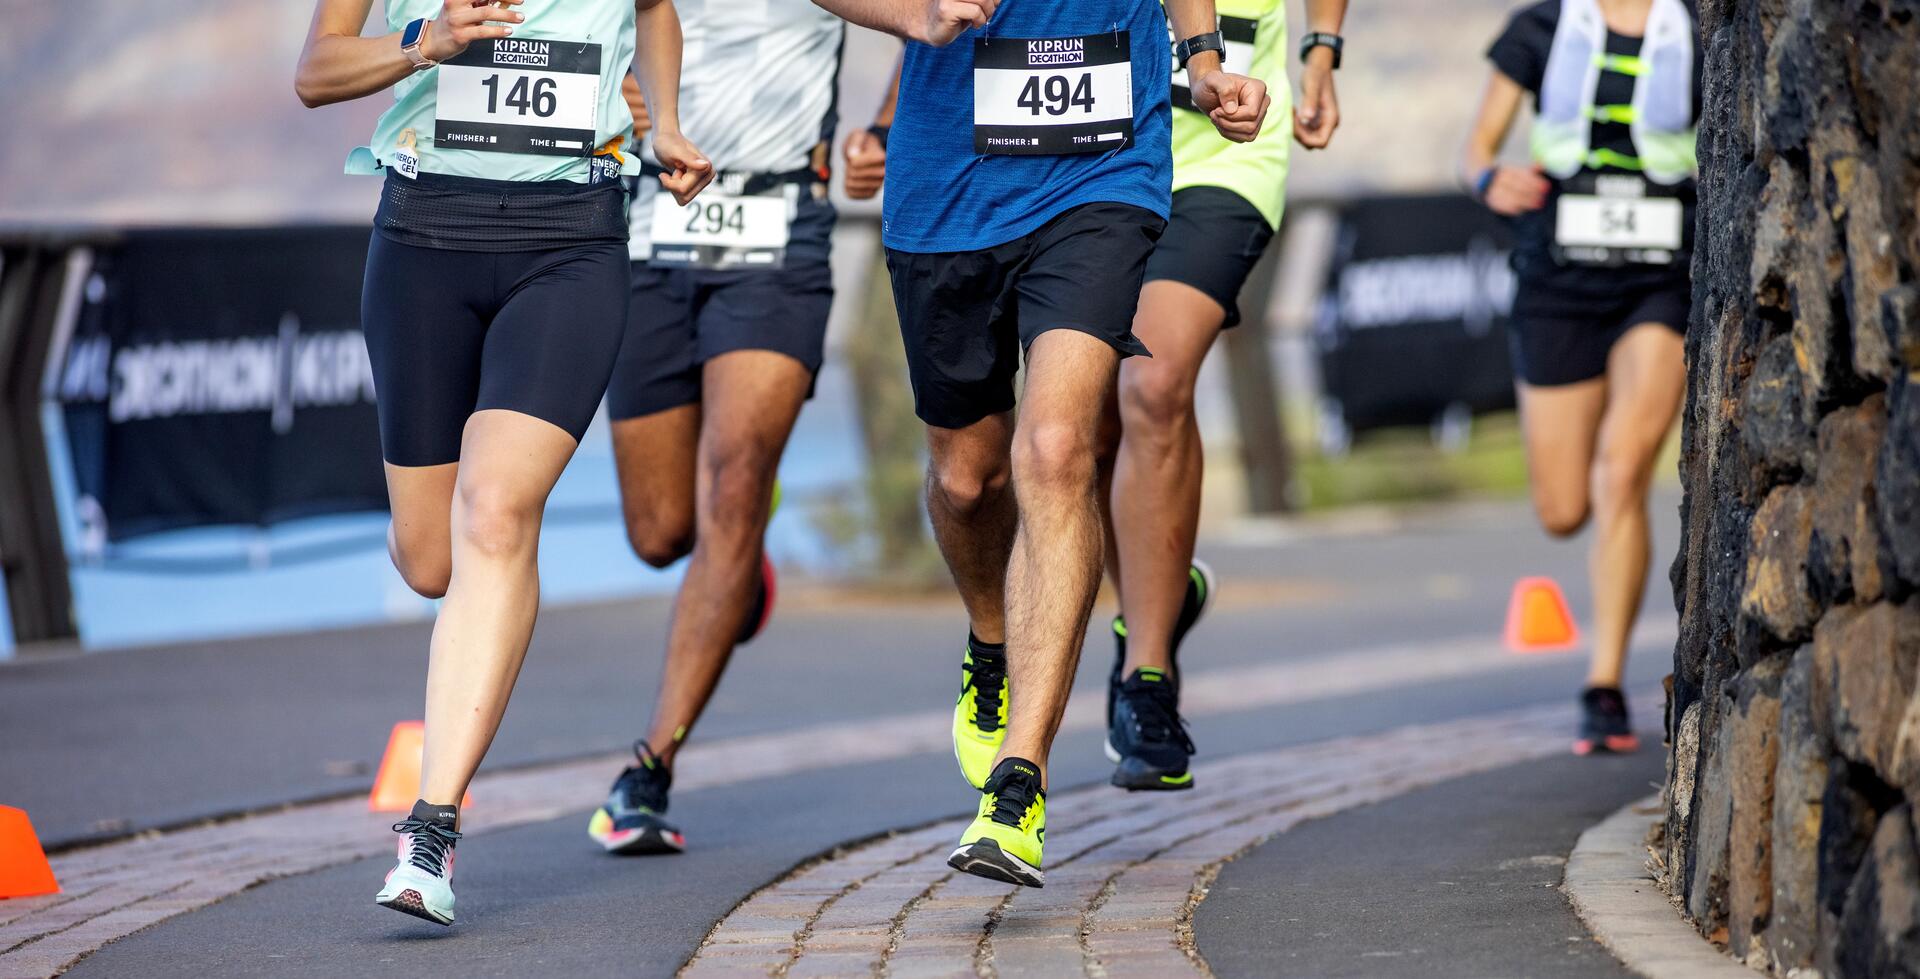 zawodnicy biegnący w maratonie w butach do biegania